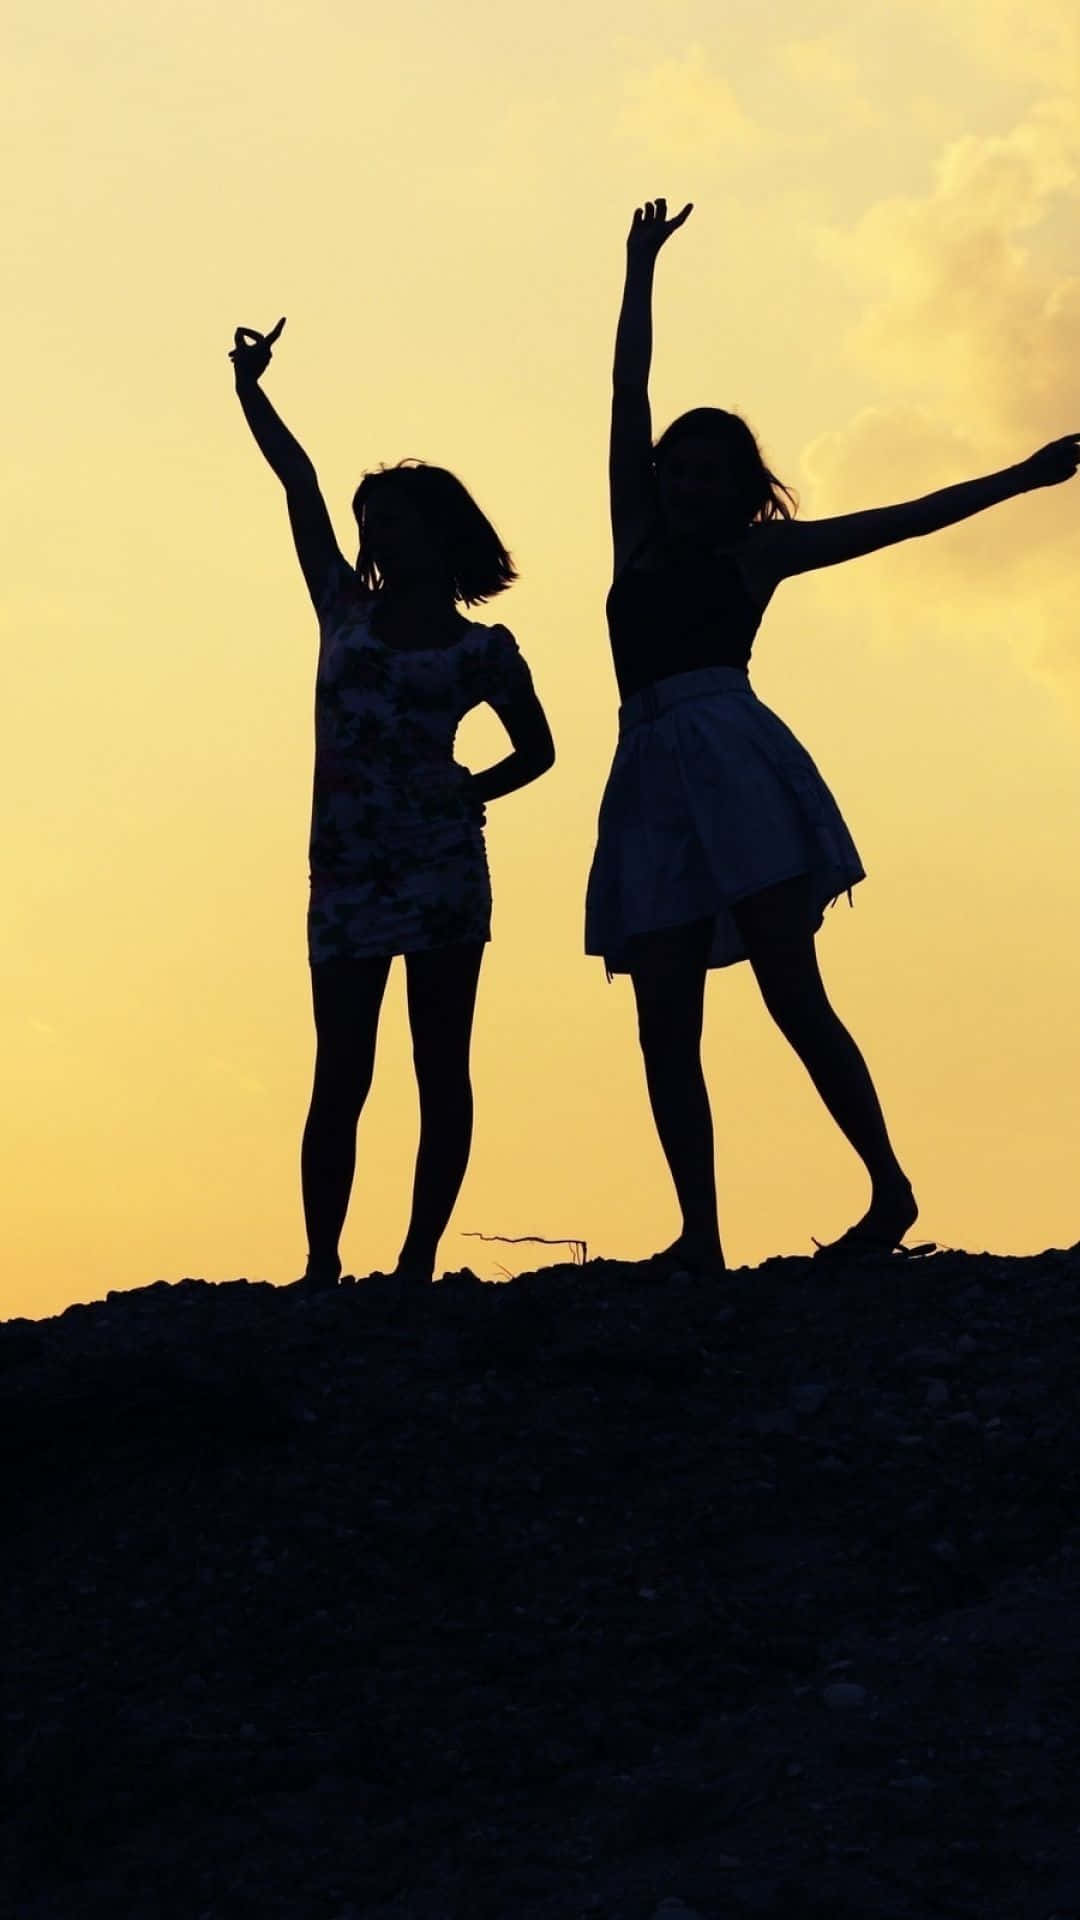 Freundschaftsilhouette Von Frauen Bei Sonnenuntergang Bild